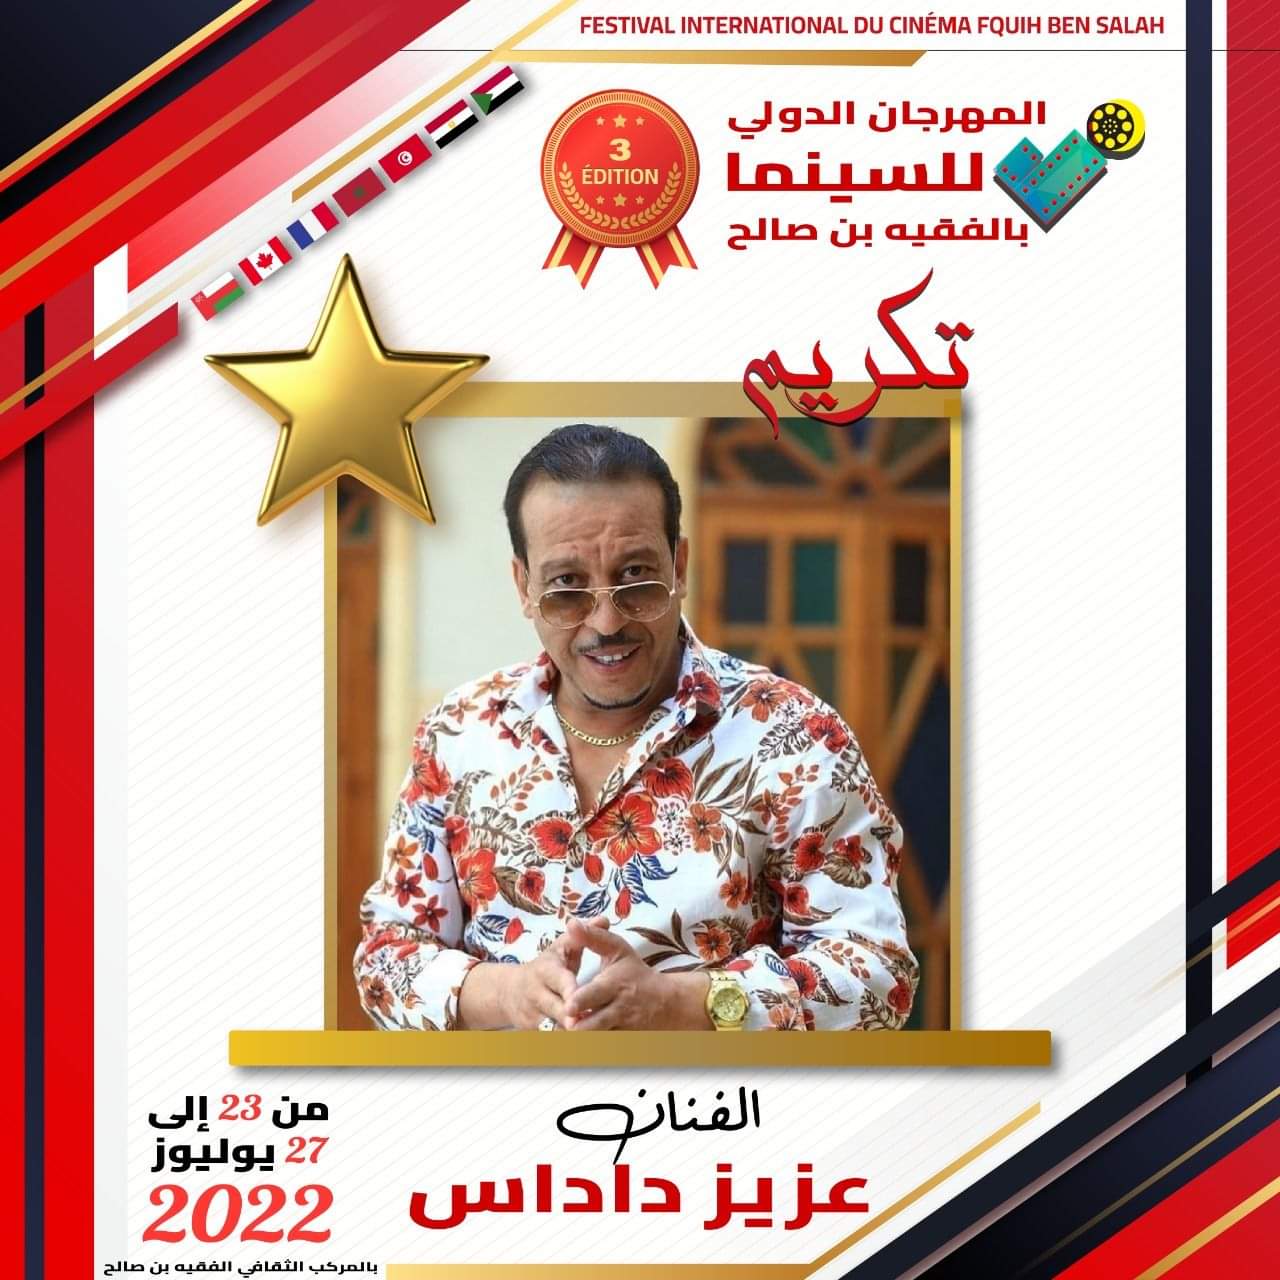 تكريم الممثل عزيز داداس بالمهرجان الدولي الثالث للسينما بالفقيه بن صالح